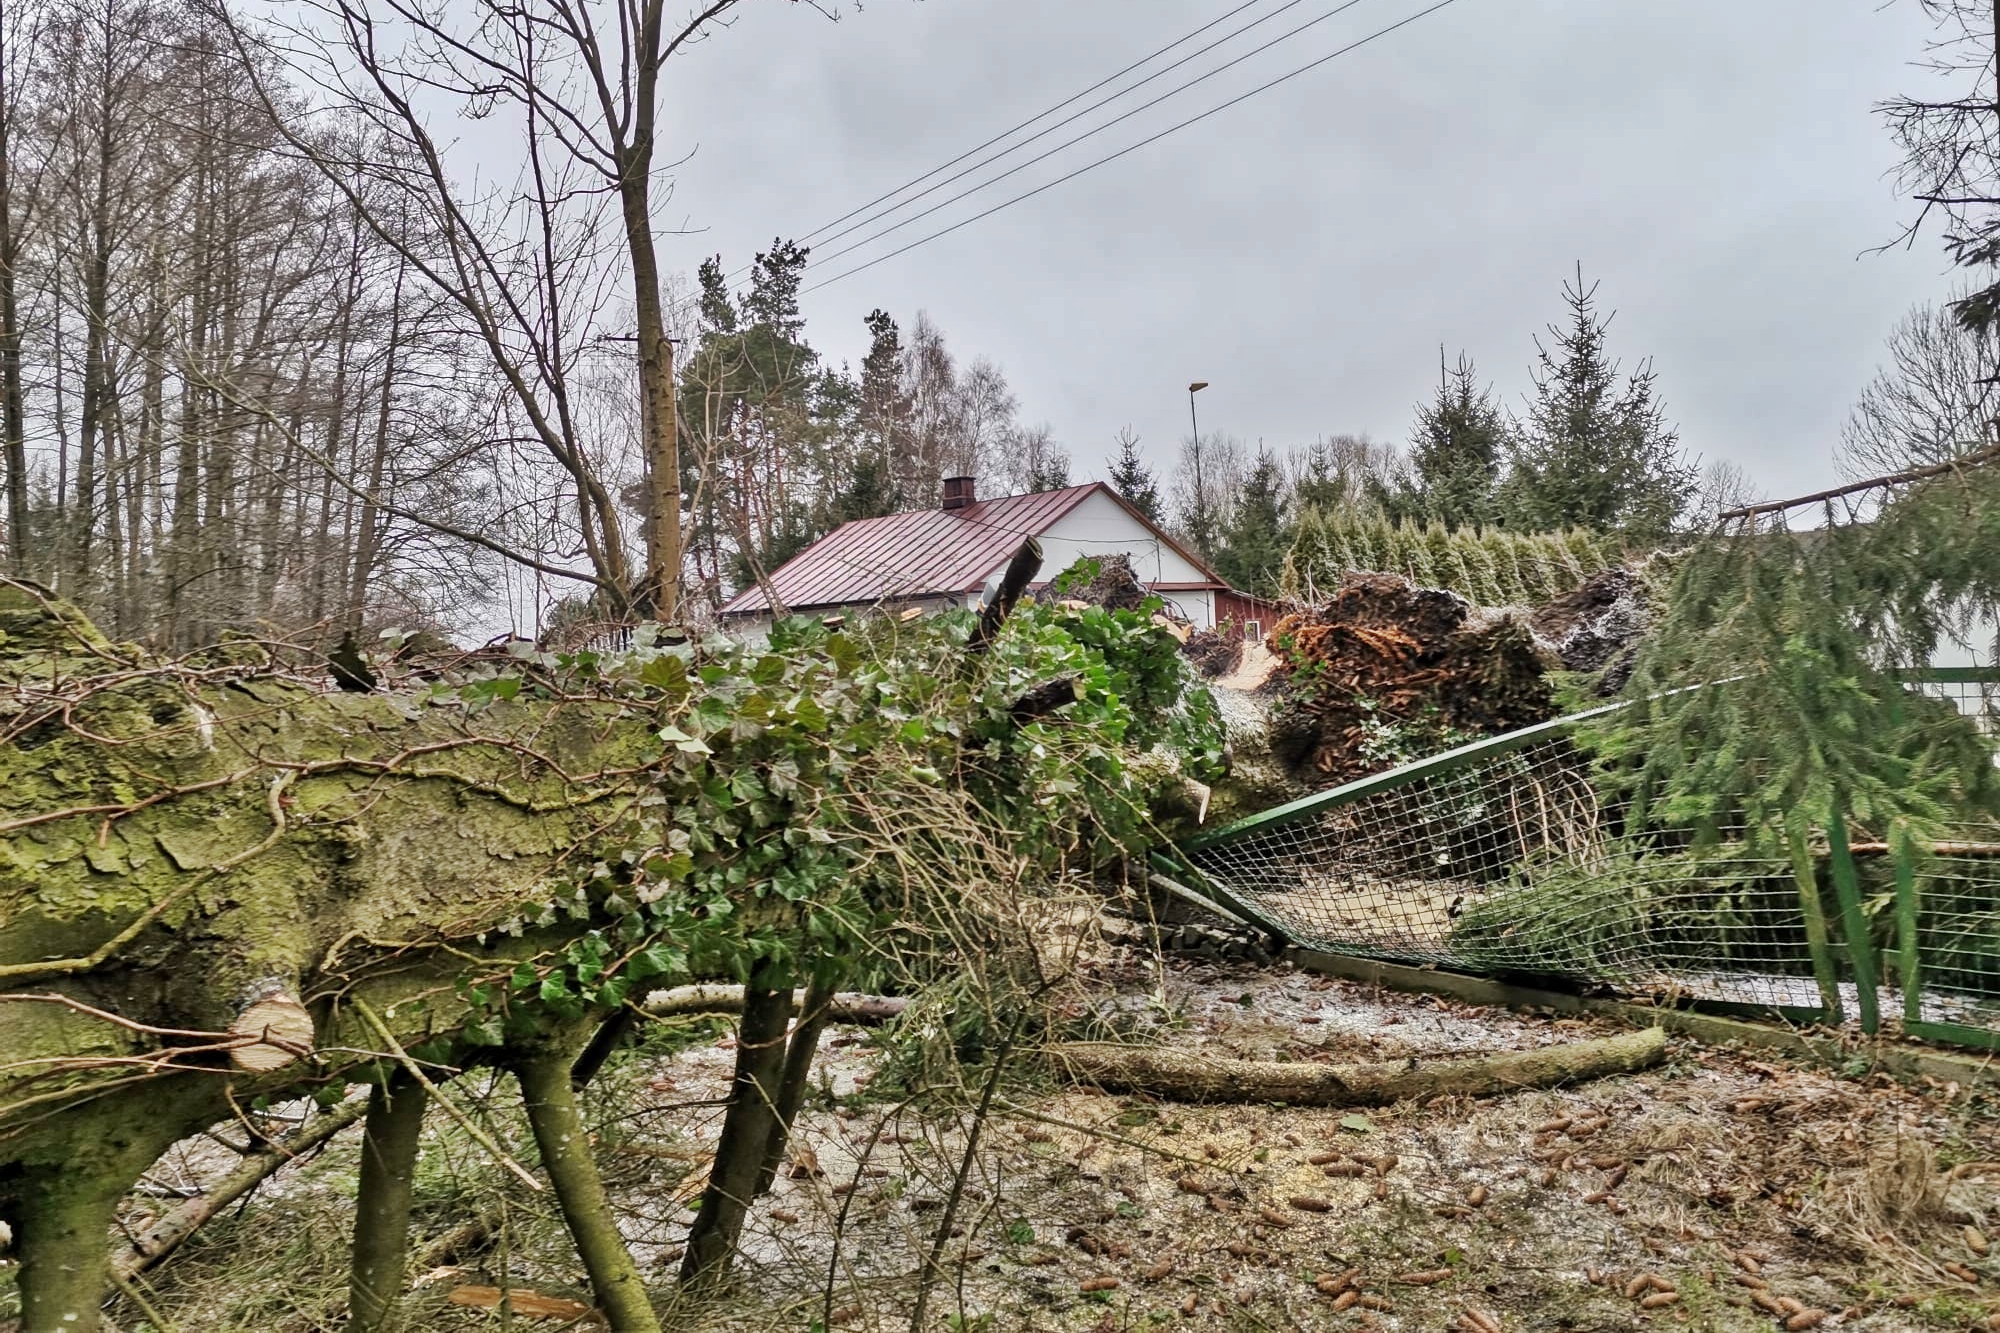 17 stycznia 2022 roku w miejscowości Trzemuszka (gm. Kotuń) w wyniku silnego wiatru doszło do przewrócenia się drzewa na drogę gminną oraz ogrodzenie posesji. 